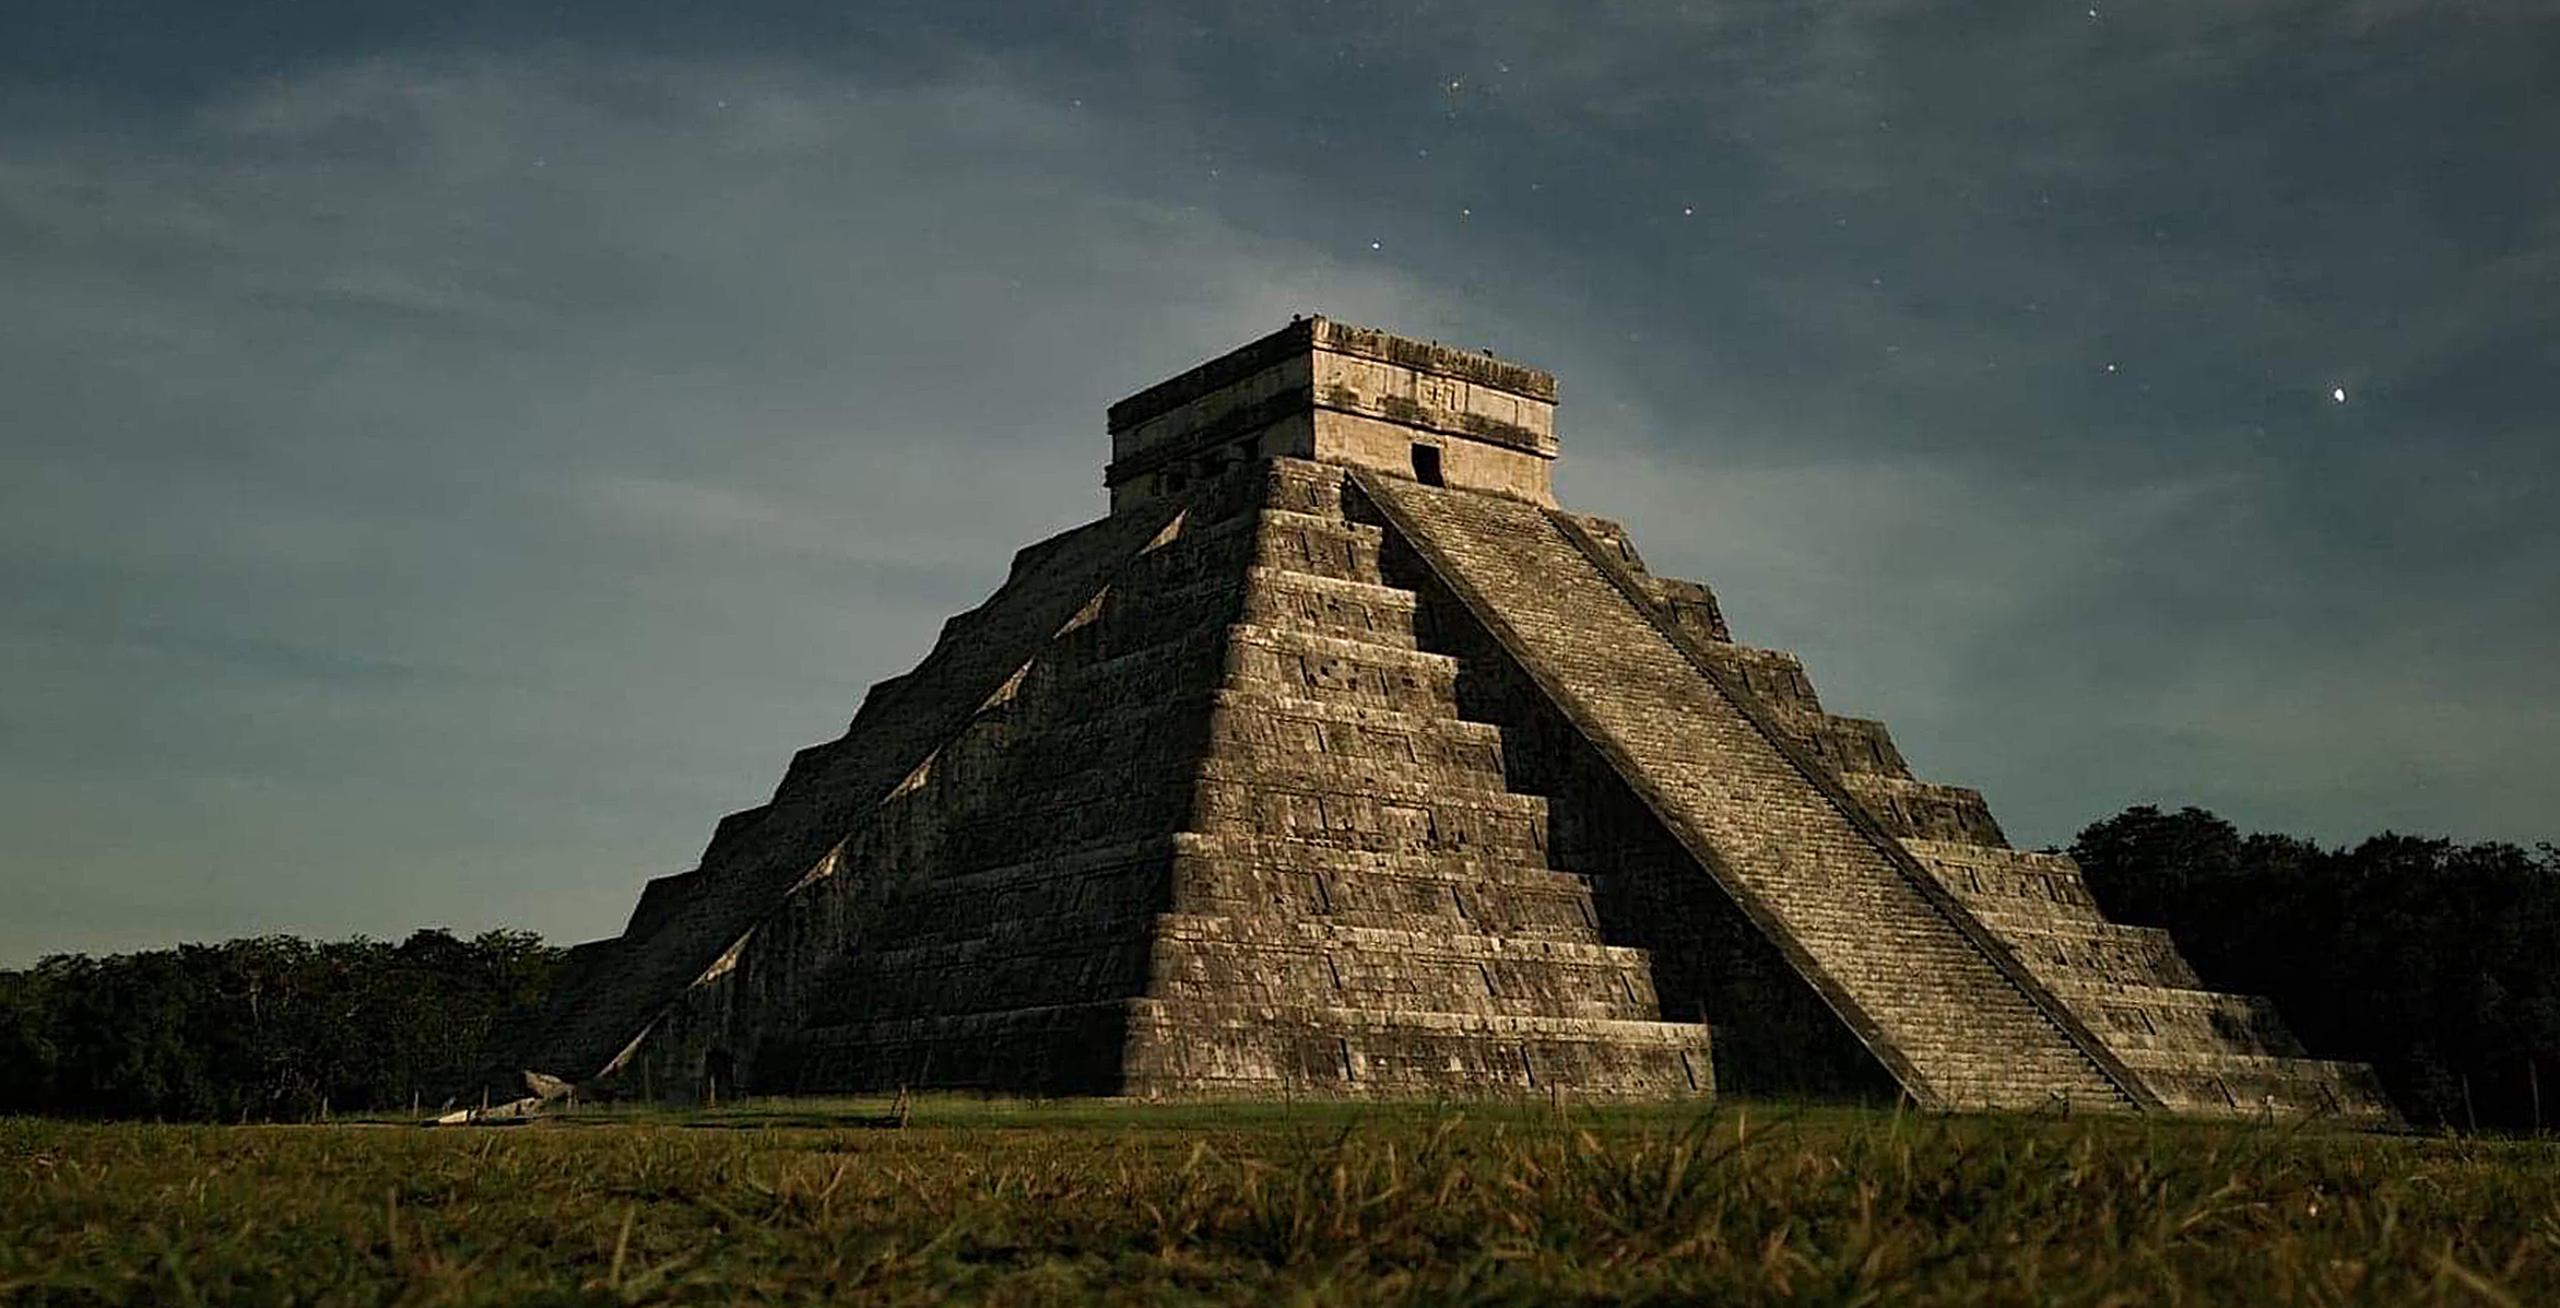 Fotografía cedida de la pirámide de Chichén Itzá, en la ciudad de Mérida, estado de Yucatán (México). EFE/ José Antonio Keb Cetina)